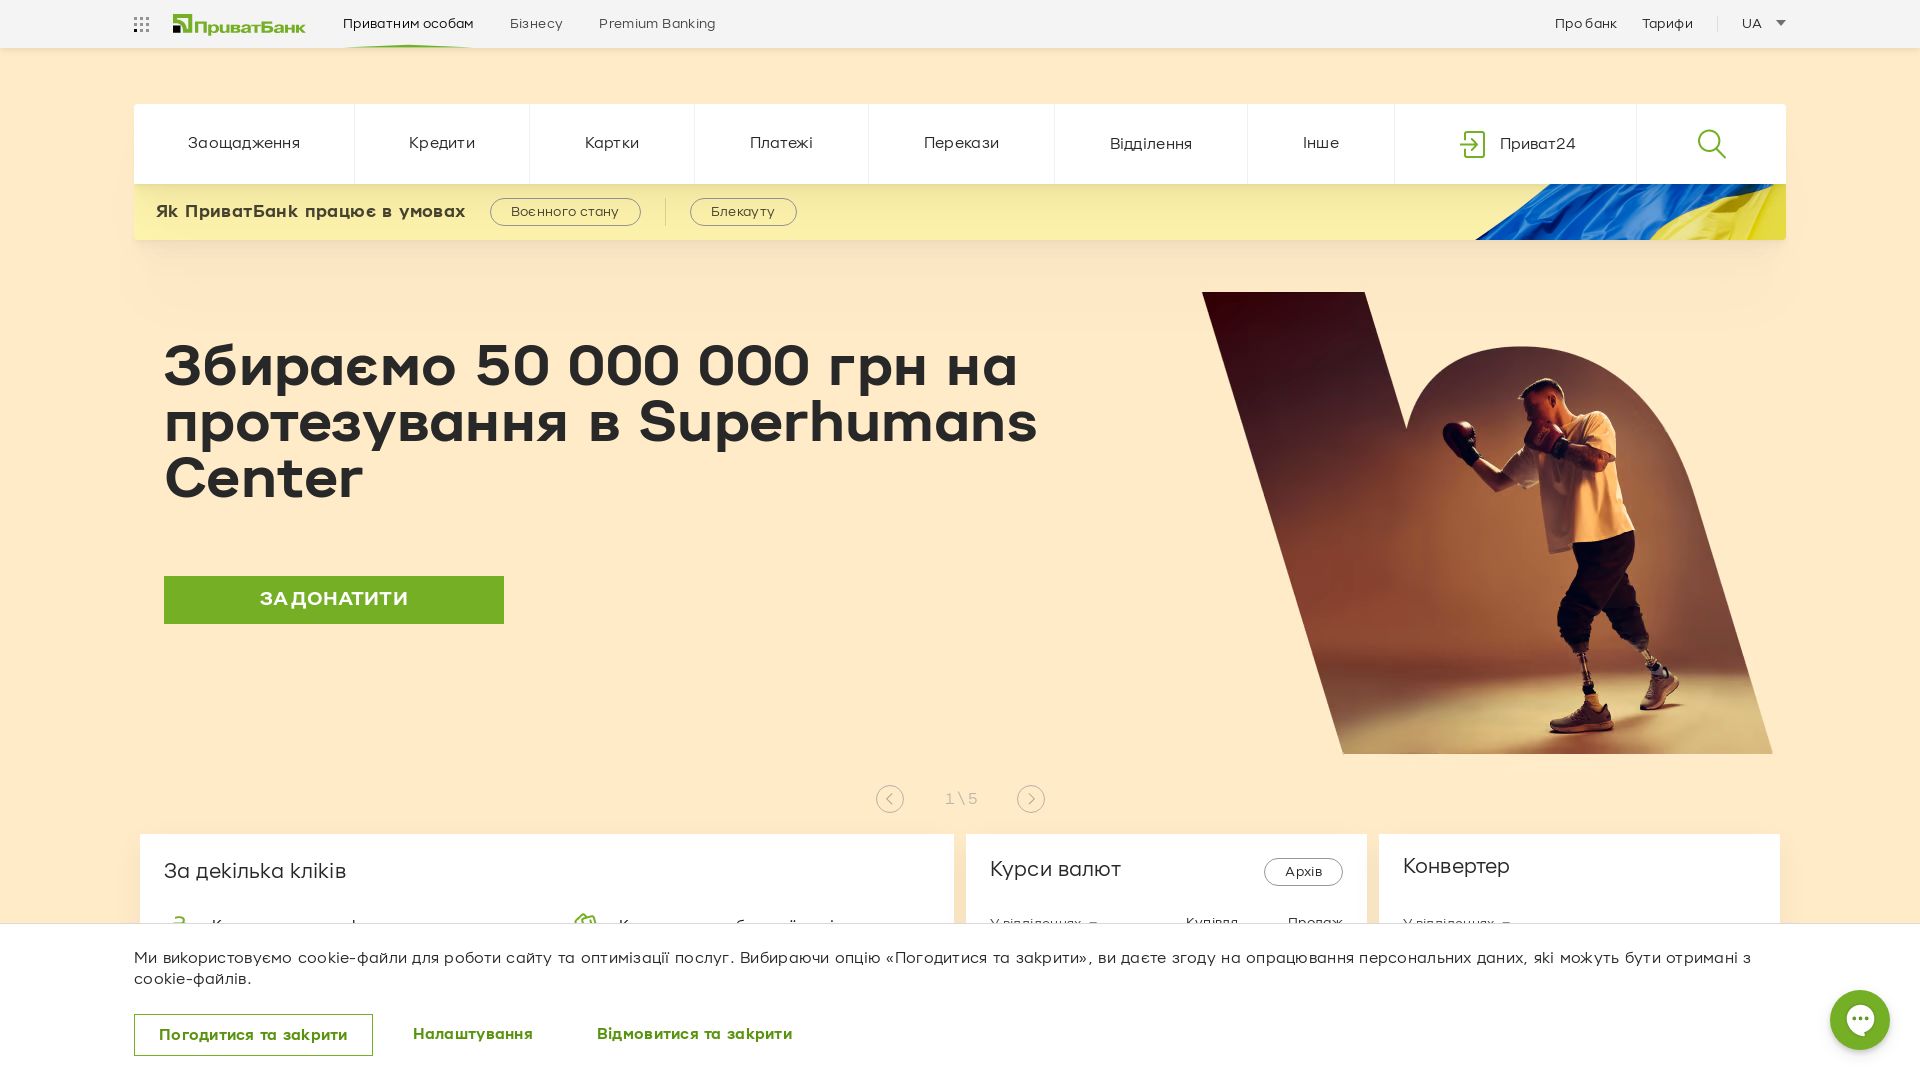 Status do site privatbank.ua está   ONLINE